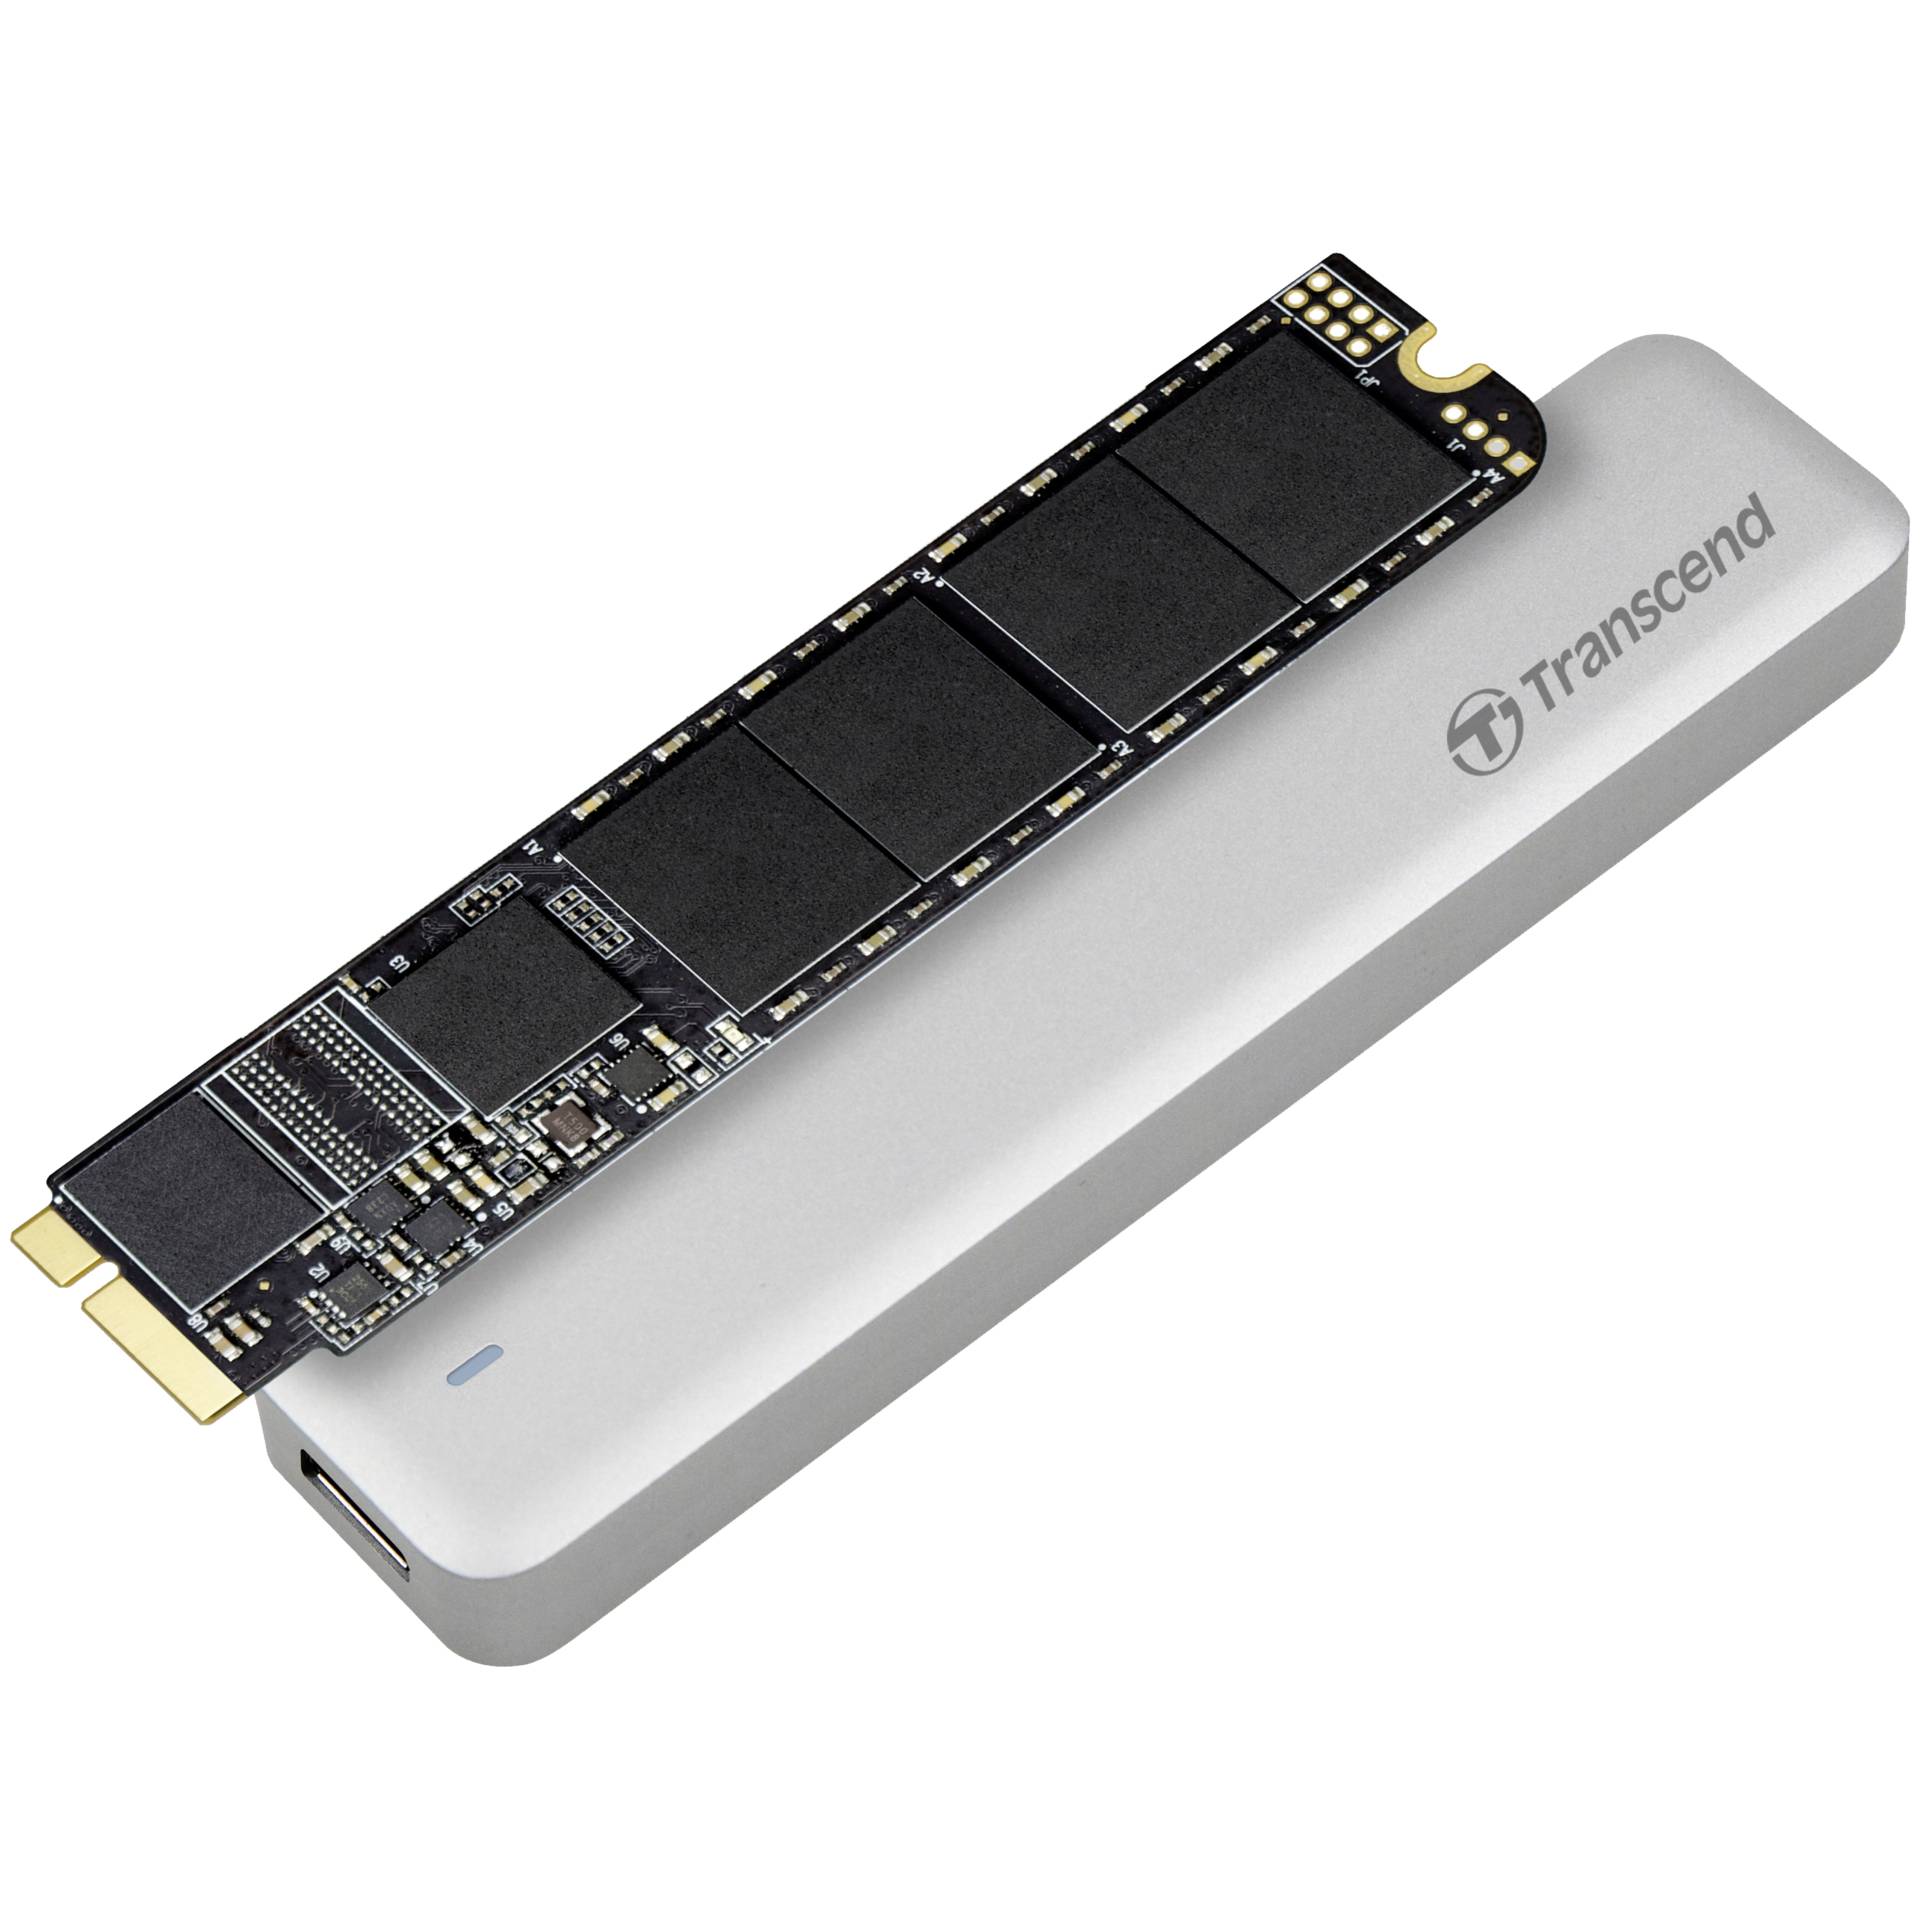 240 GB SSD Transcend JetDrive 520, für Apple MacBook Pro lesen: 570MB/s, schreiben: 460MB/s